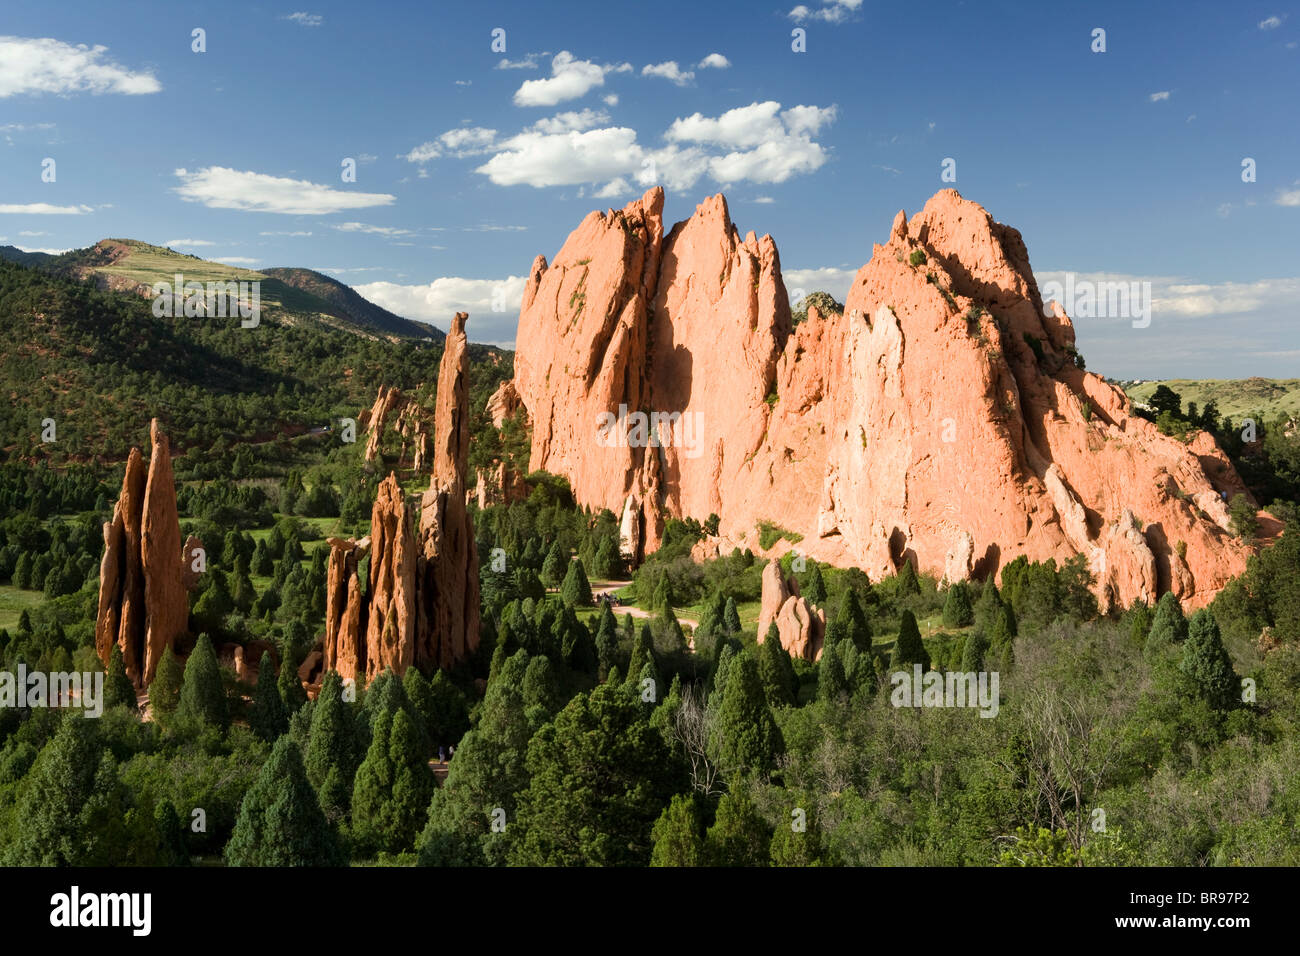 Garden of the Gods Landscape - Colorado Springs, Colorado USA Stock Photo